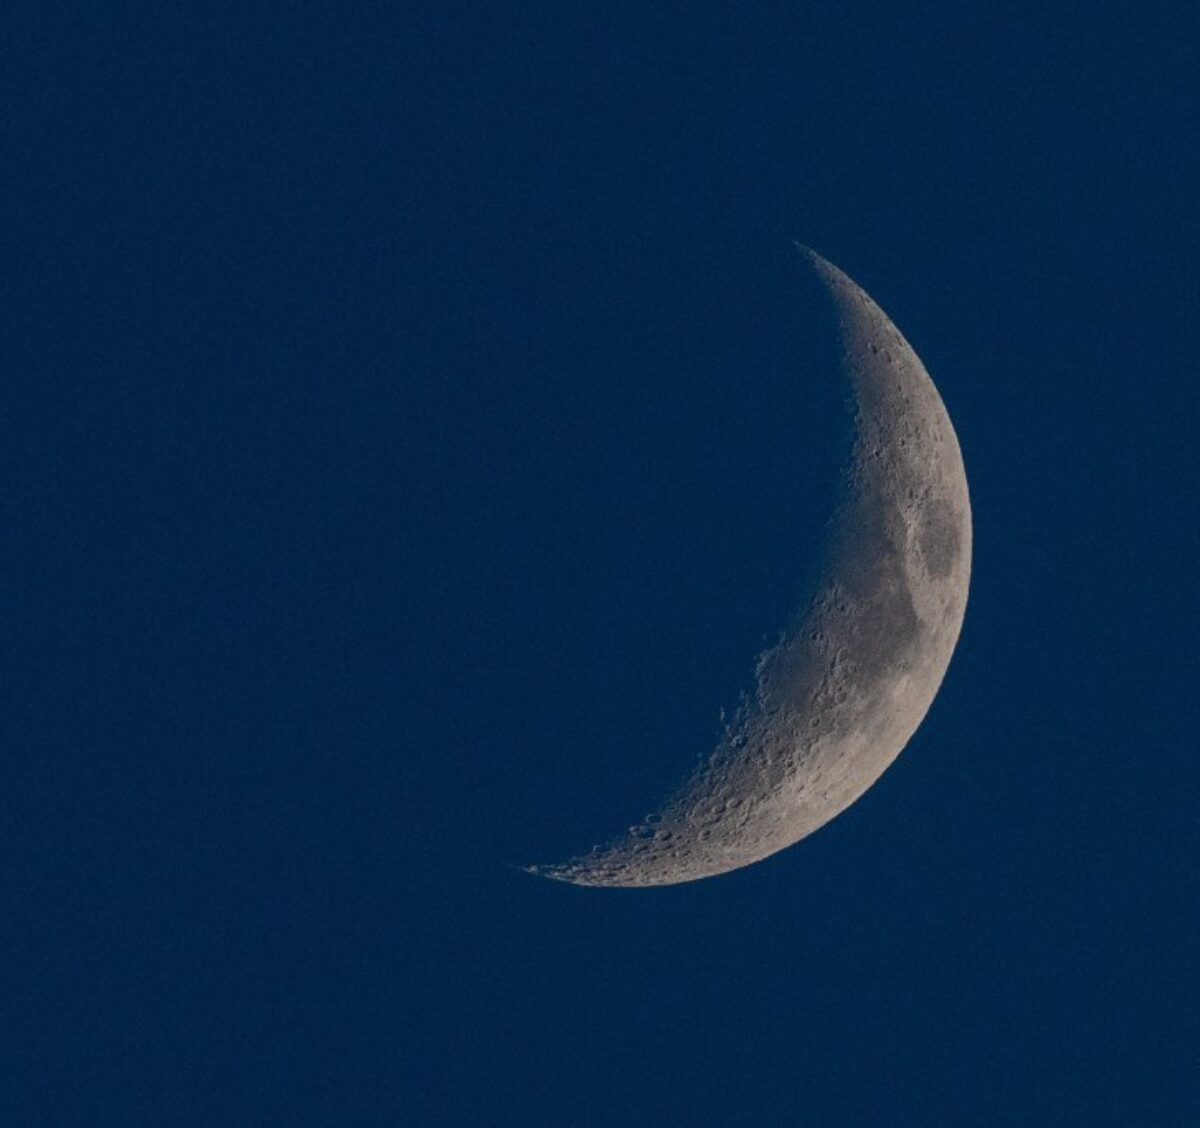 On voit même des cratères ! Magnifique photo de lune par Alain Caron